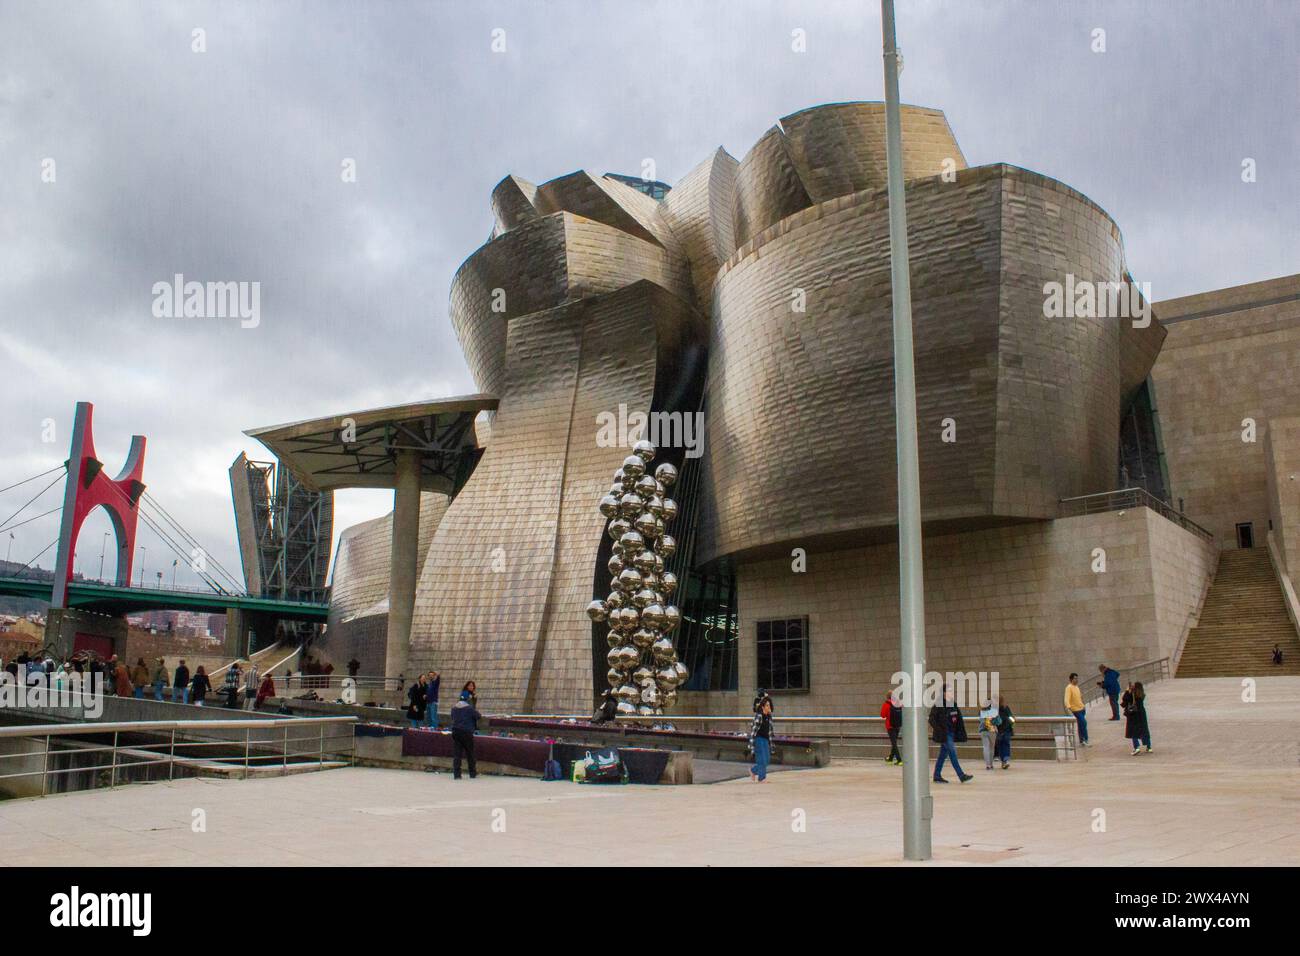 Images du bâtiment du musée Guggenheim à Bilbao, Espagne Banque D'Images